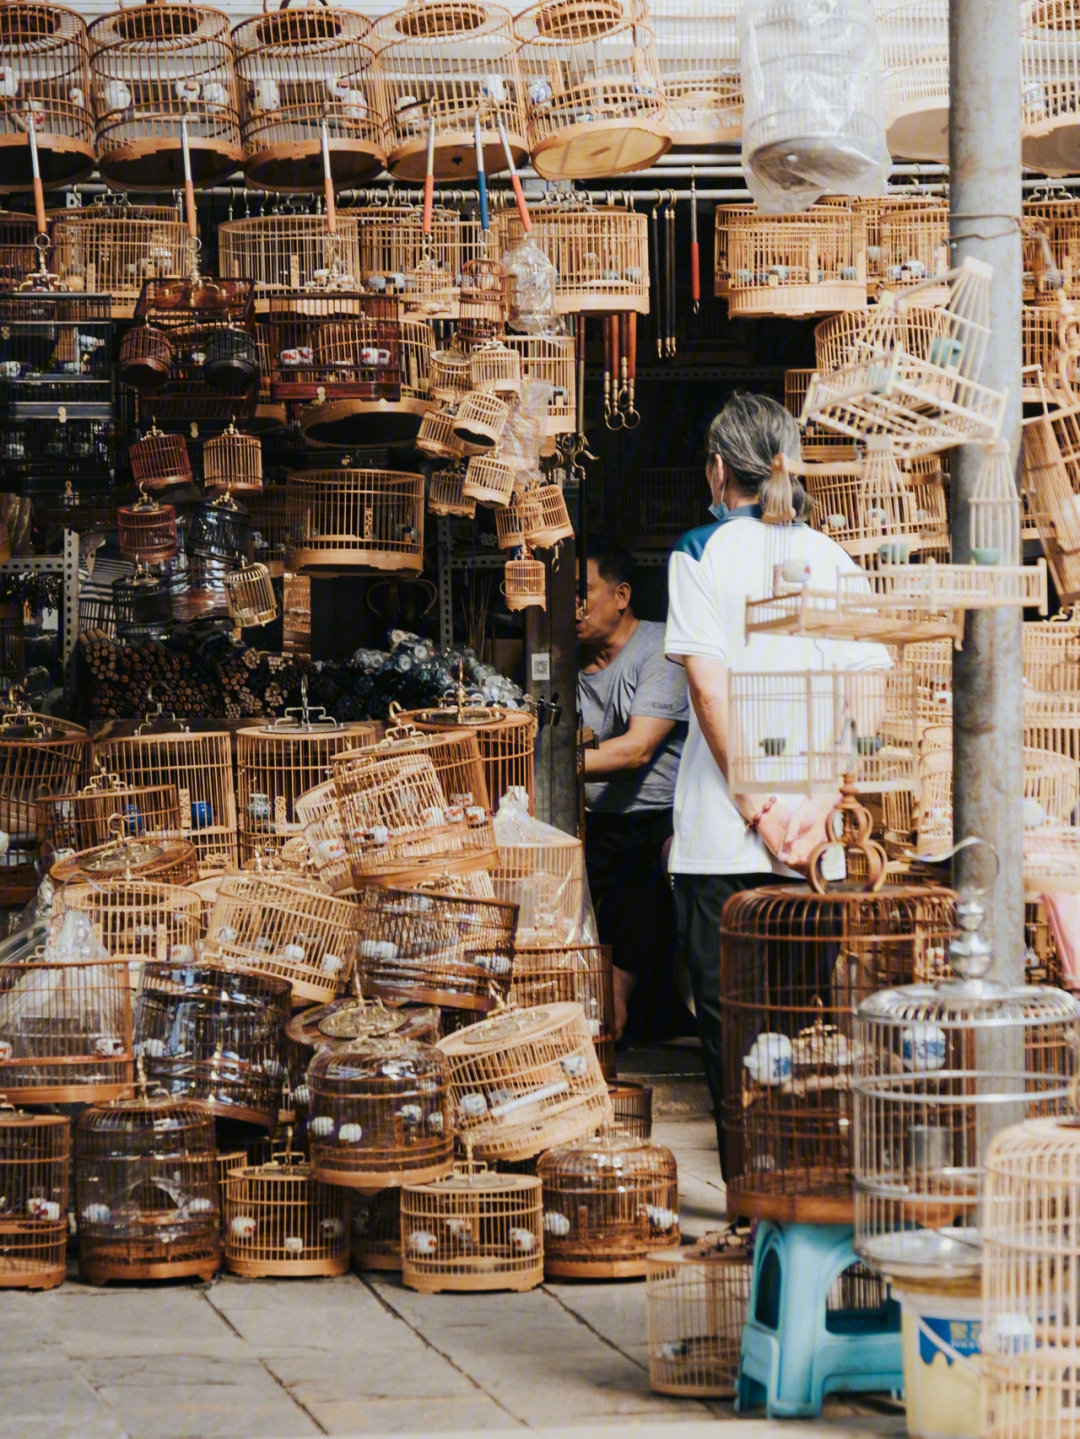 花鸟鱼虫市场北京图片